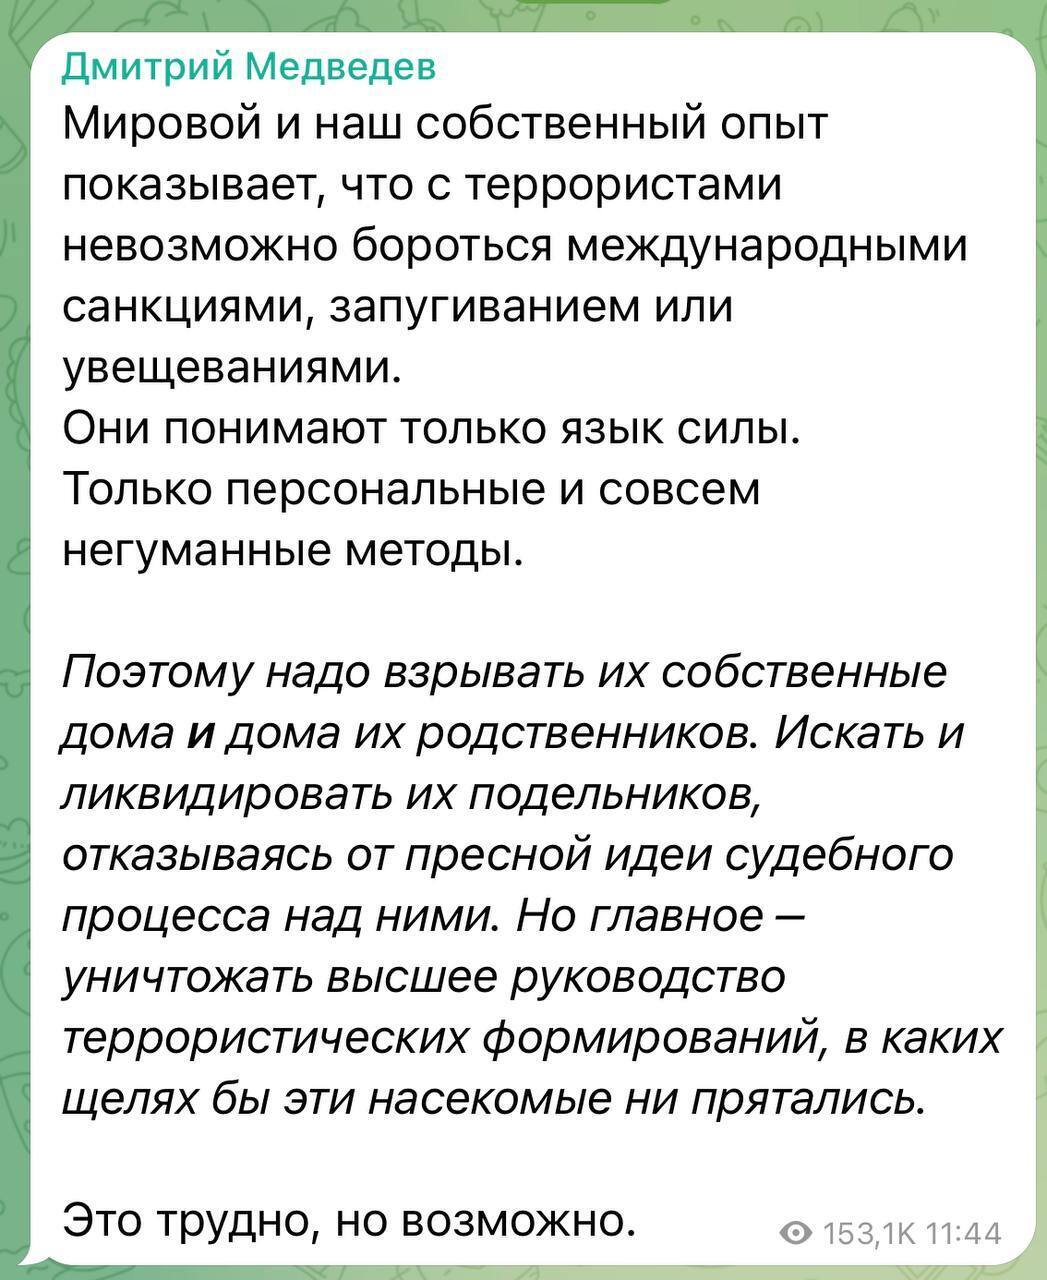 ''Ответом будет продолжение зерновой сделки'': реакция россиян на подрыв Крымского моста (фото)